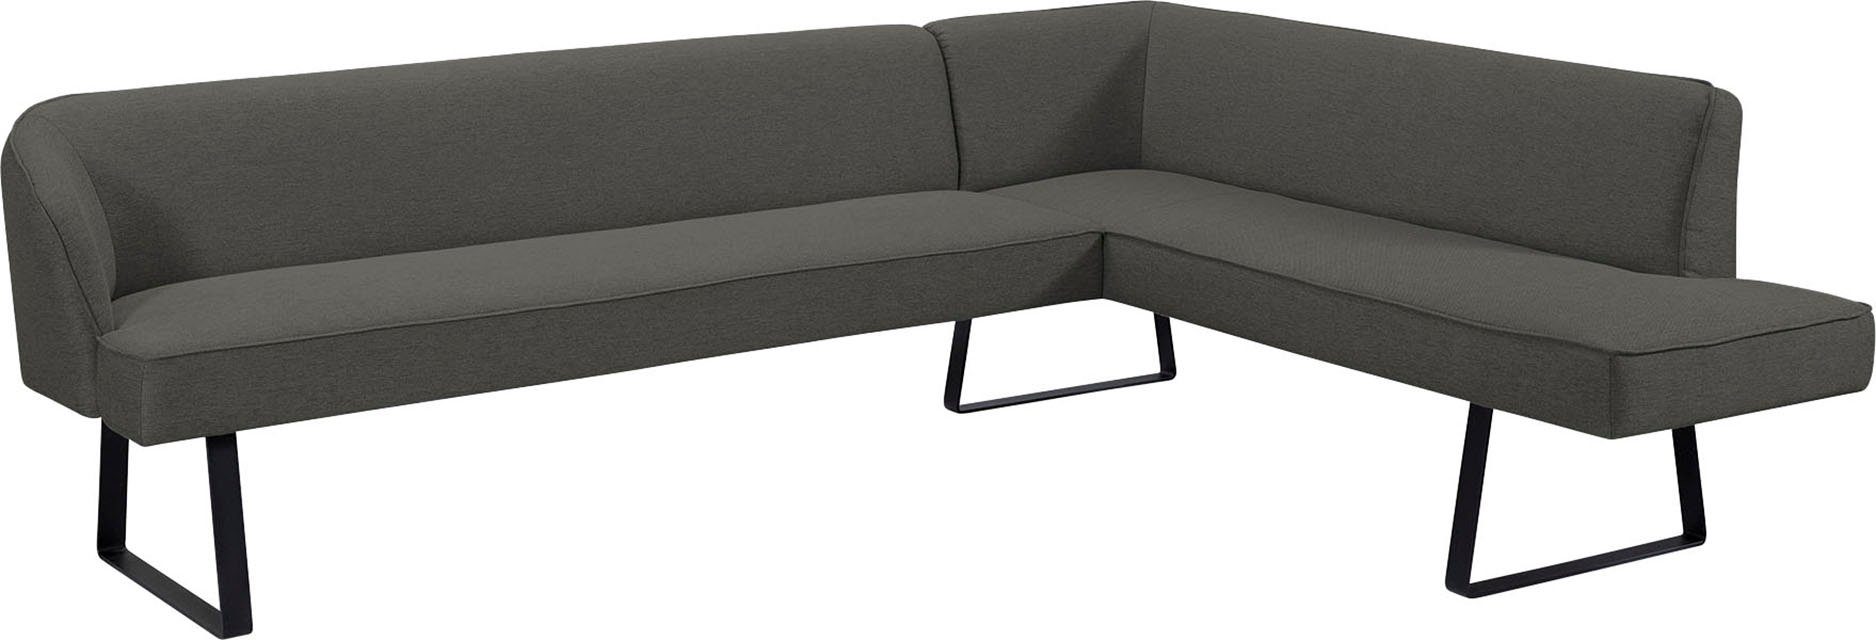 exxpo - sofa fashion Eckbank in mit Bezug und Metallfüßen, Qualitäten Americano, Keder verschiedenen